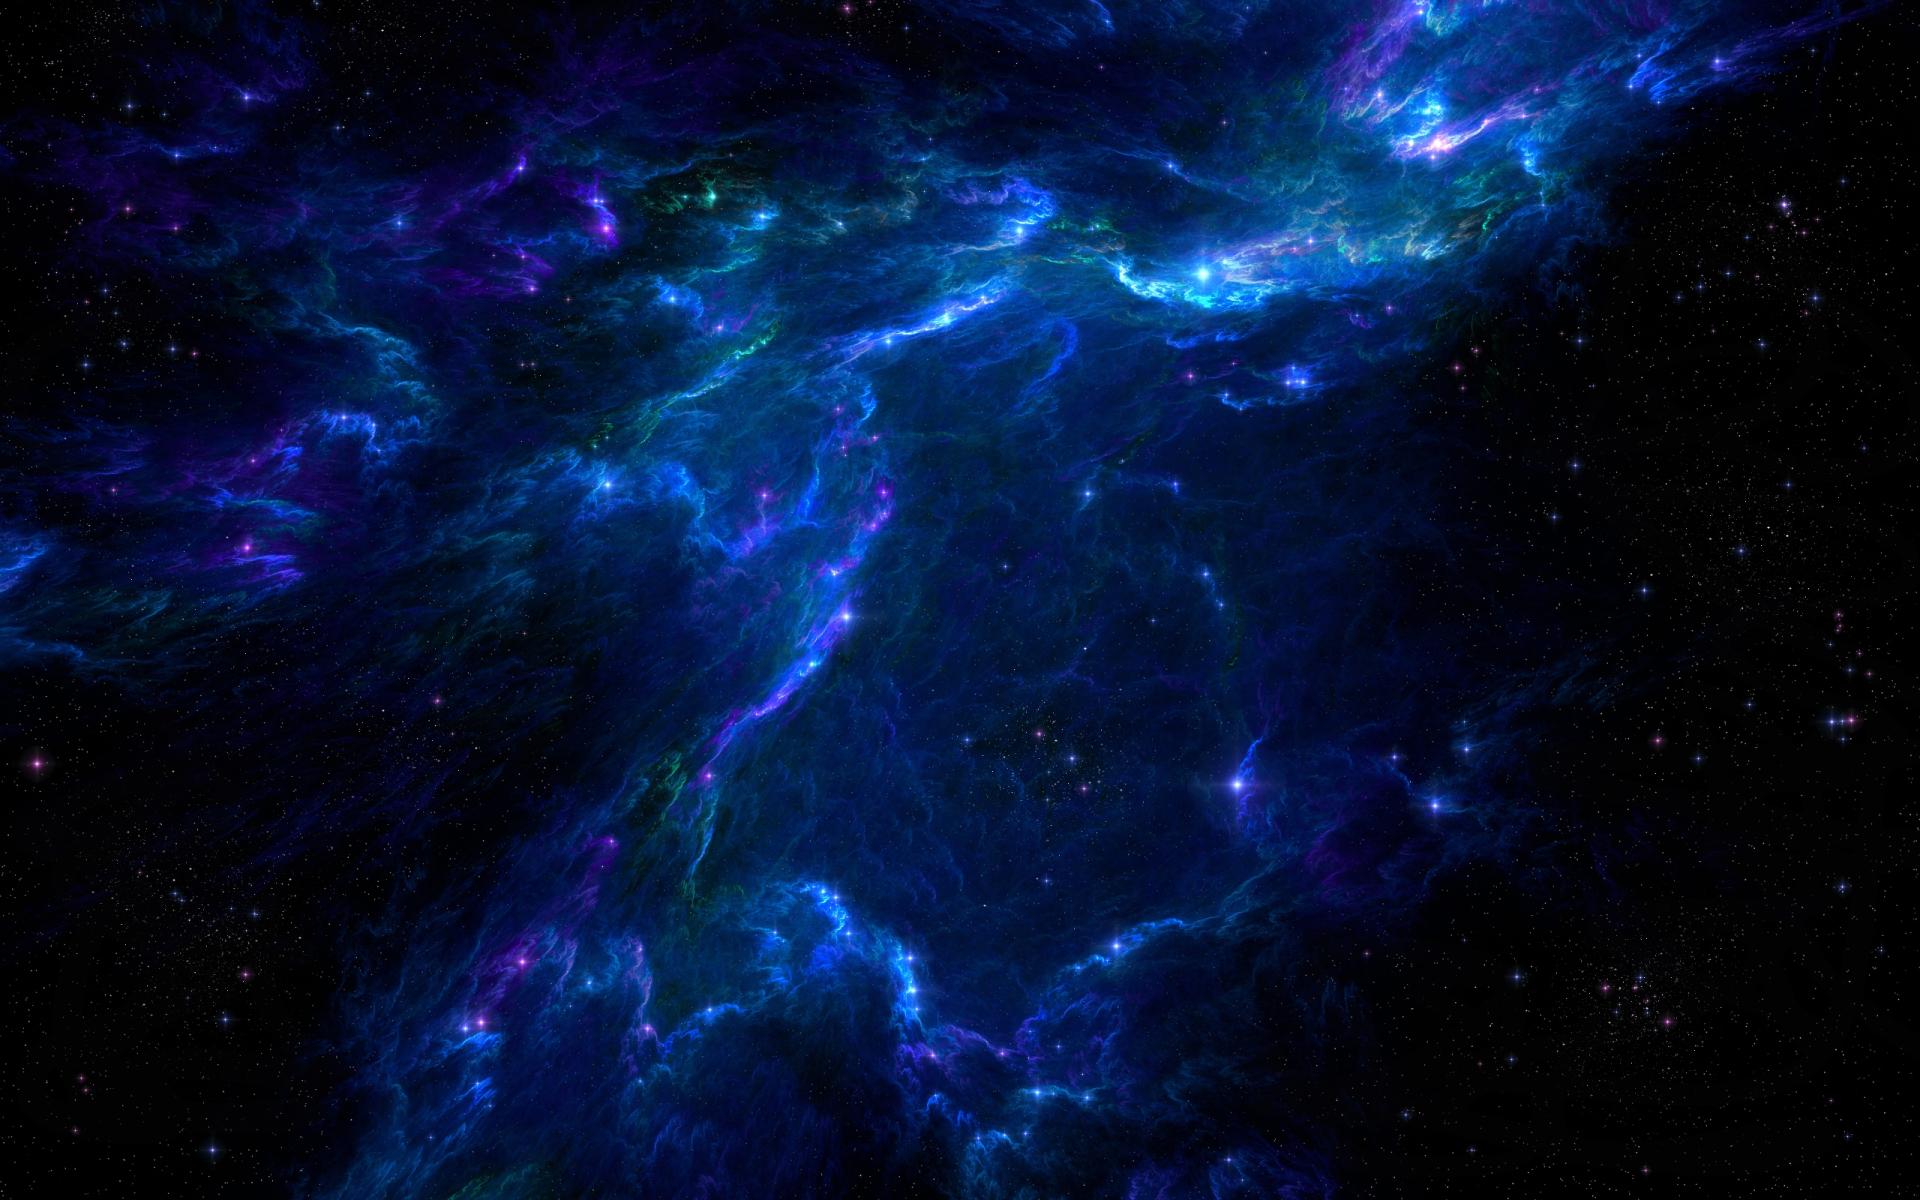 Nebula Sci Fi at 1152 x 864 size wallpapers HD quality